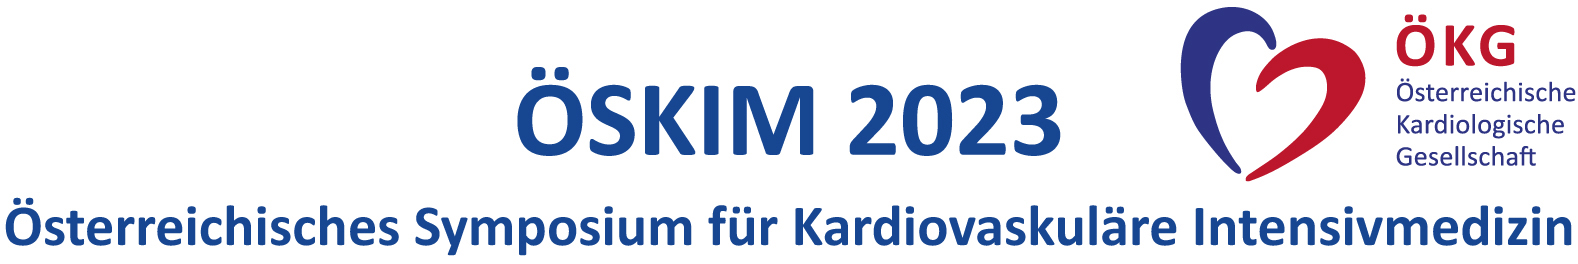 Österreichisches Symposium für Kardiovaskuläre Intensivmedizin 2023